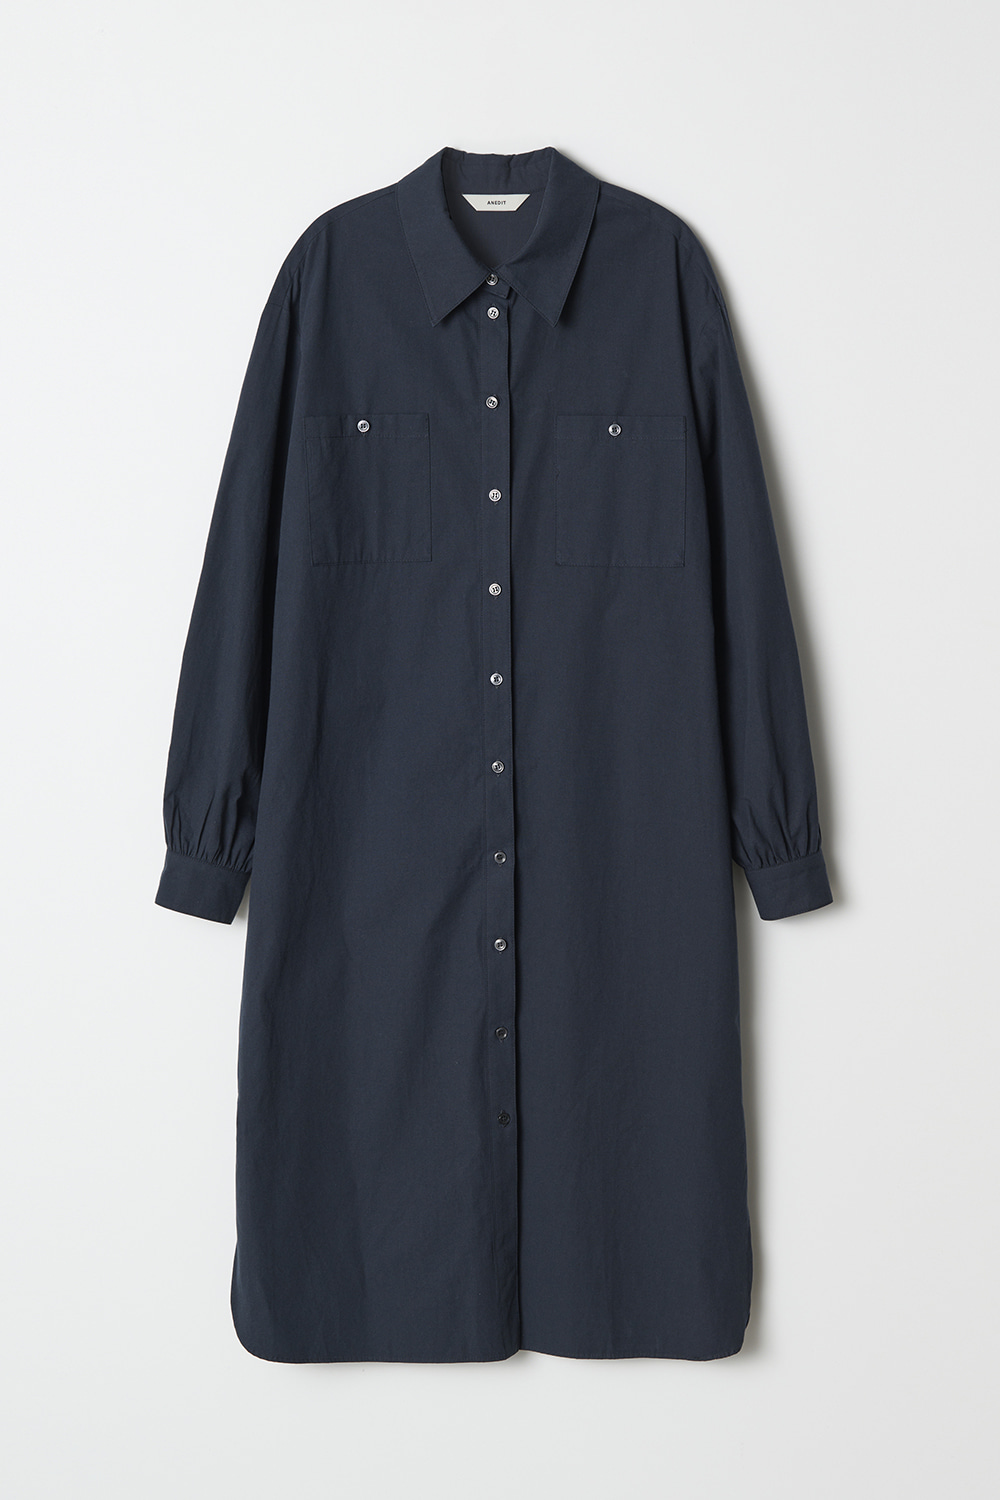 [10/14예약발송]Two Pocket Shirt Dress_Fog Navy